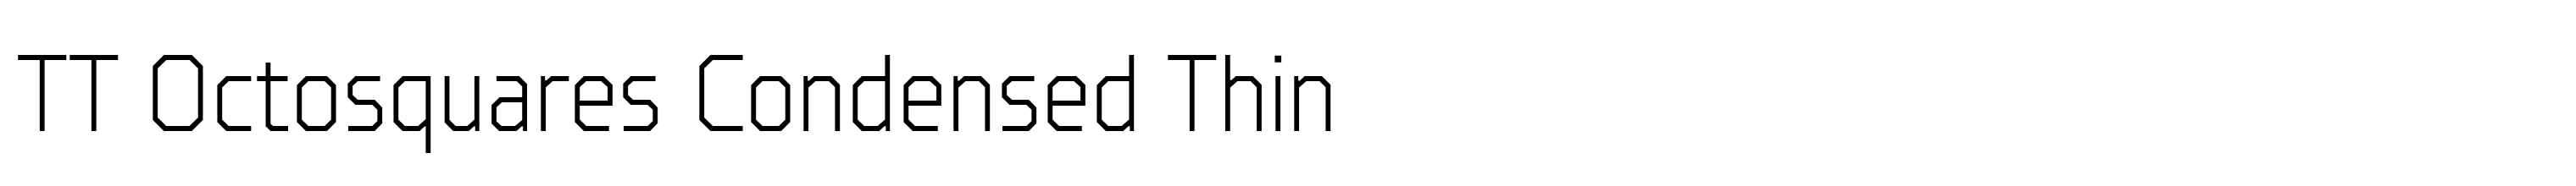 TT Octosquares Condensed Thin